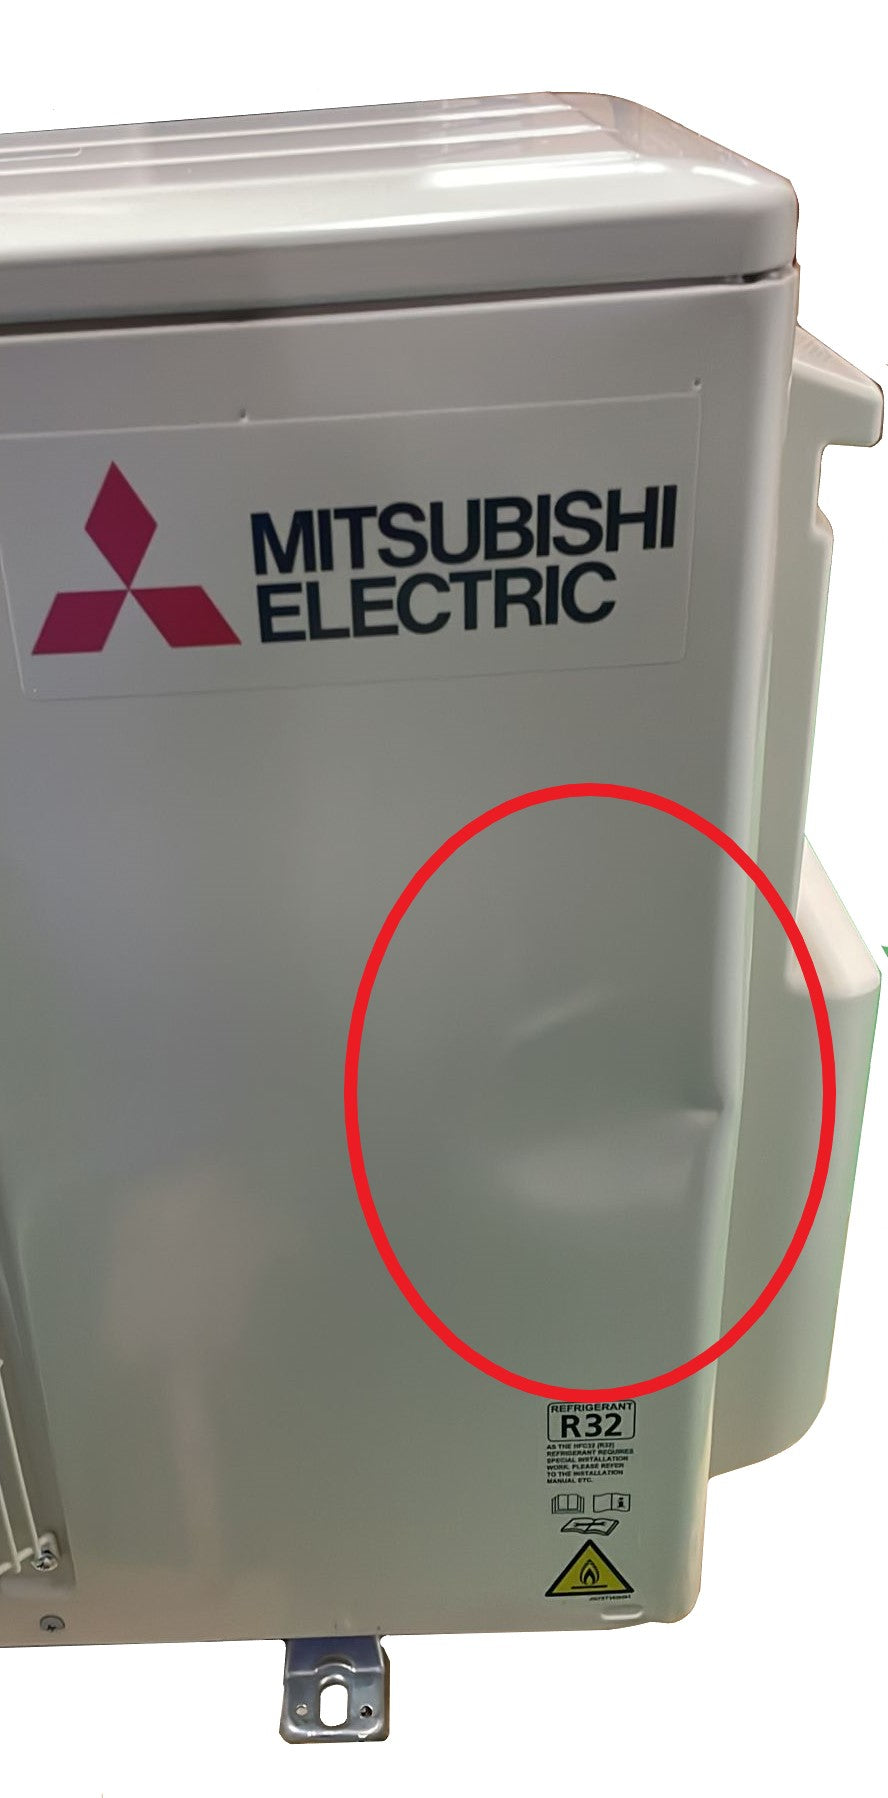 immagine-4-mitsubishi-electric-area-occasioni-climatizzatore-condizionatore-mitsubishi-electric-dual-split-inverter-linea-plus-serie-msz-ay-912-con-mxz-2f42vf-r-32-wi-fi-integrato-900012000